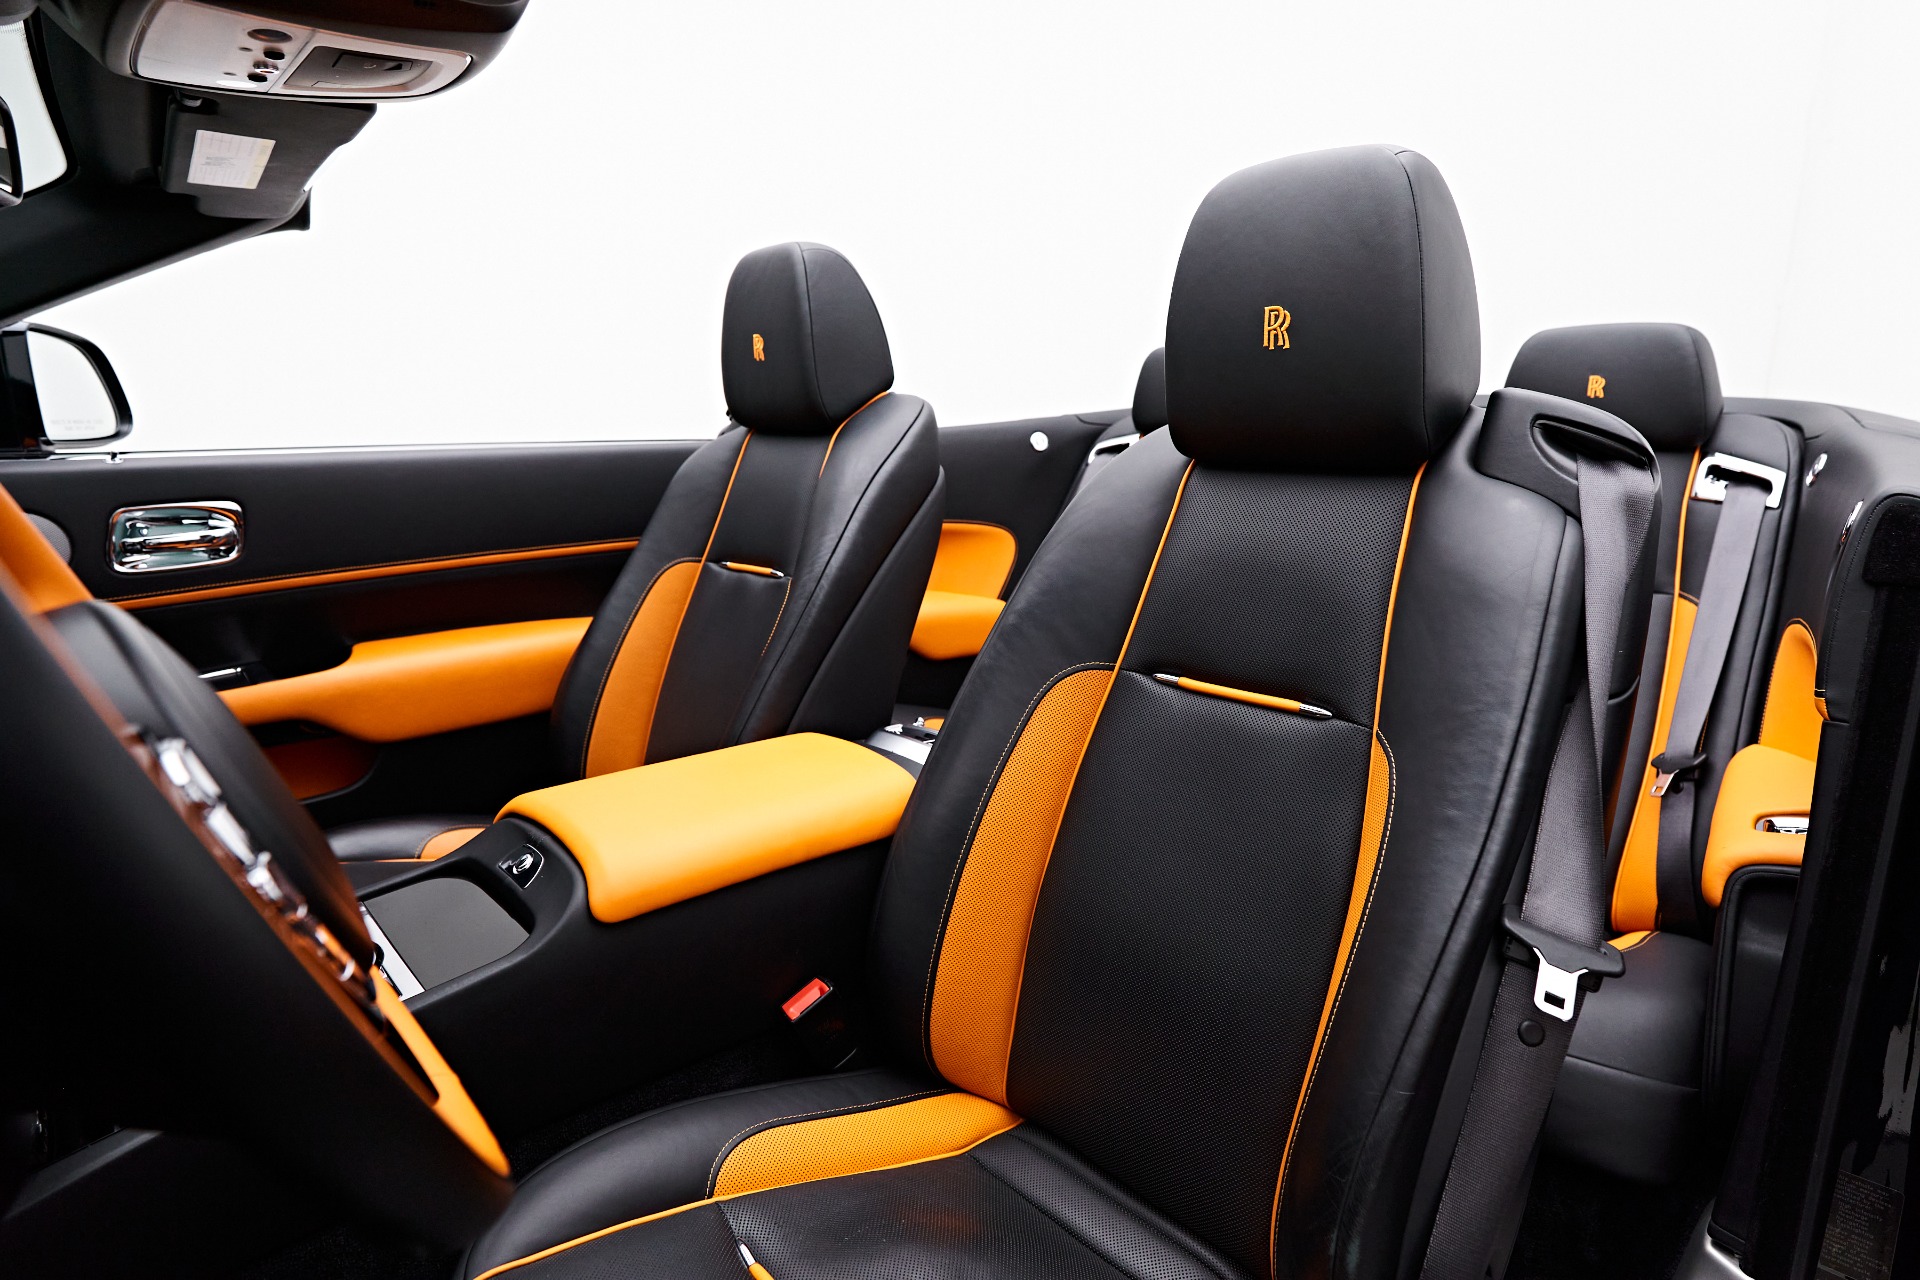 Black Hatchback Ultra Comfort Car Seat Cover at Rs 15000/set in